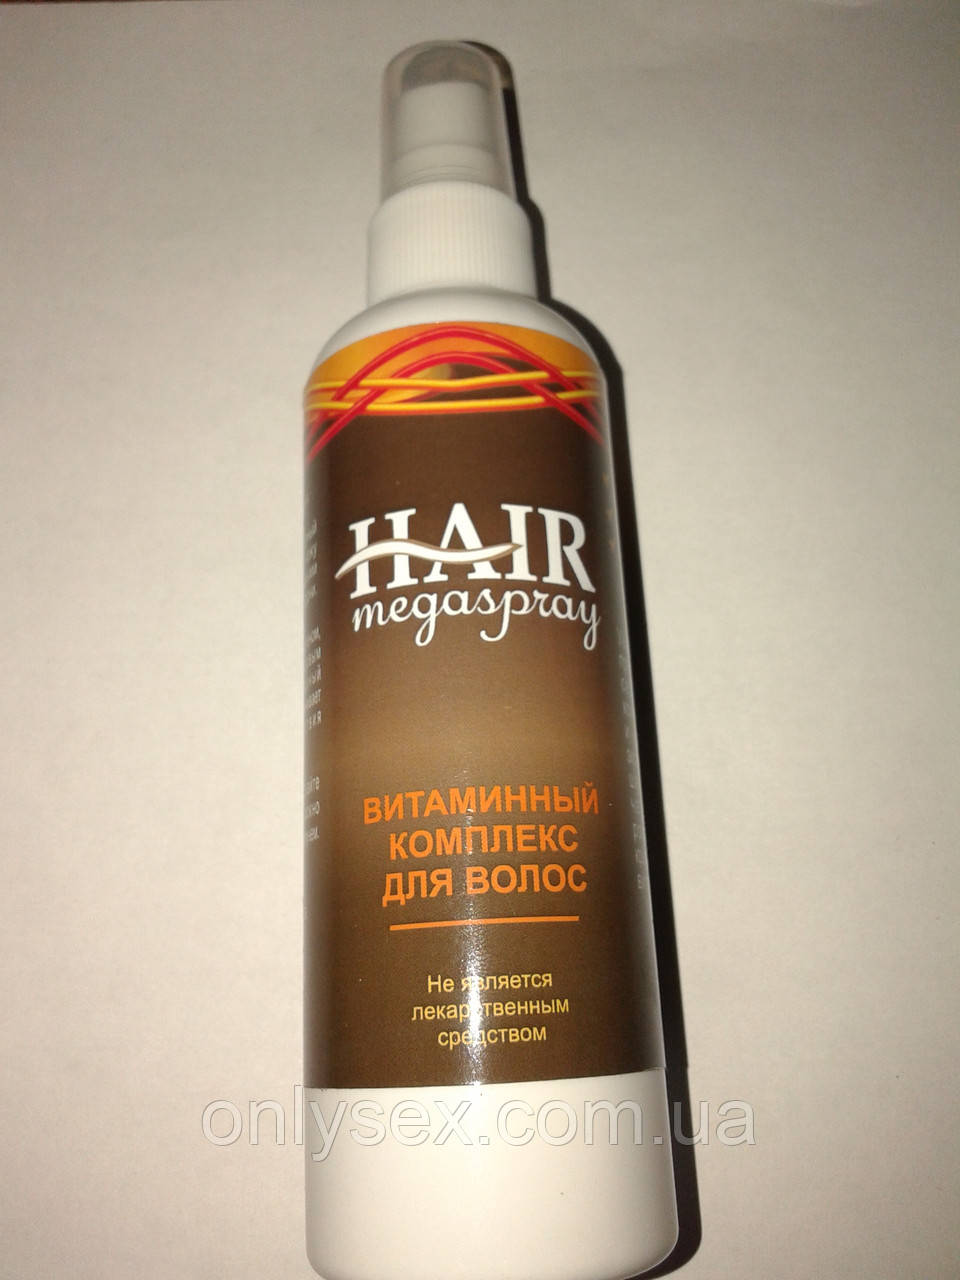 HAIR MEGASPRAY — Вітамінний комплекс для волосся